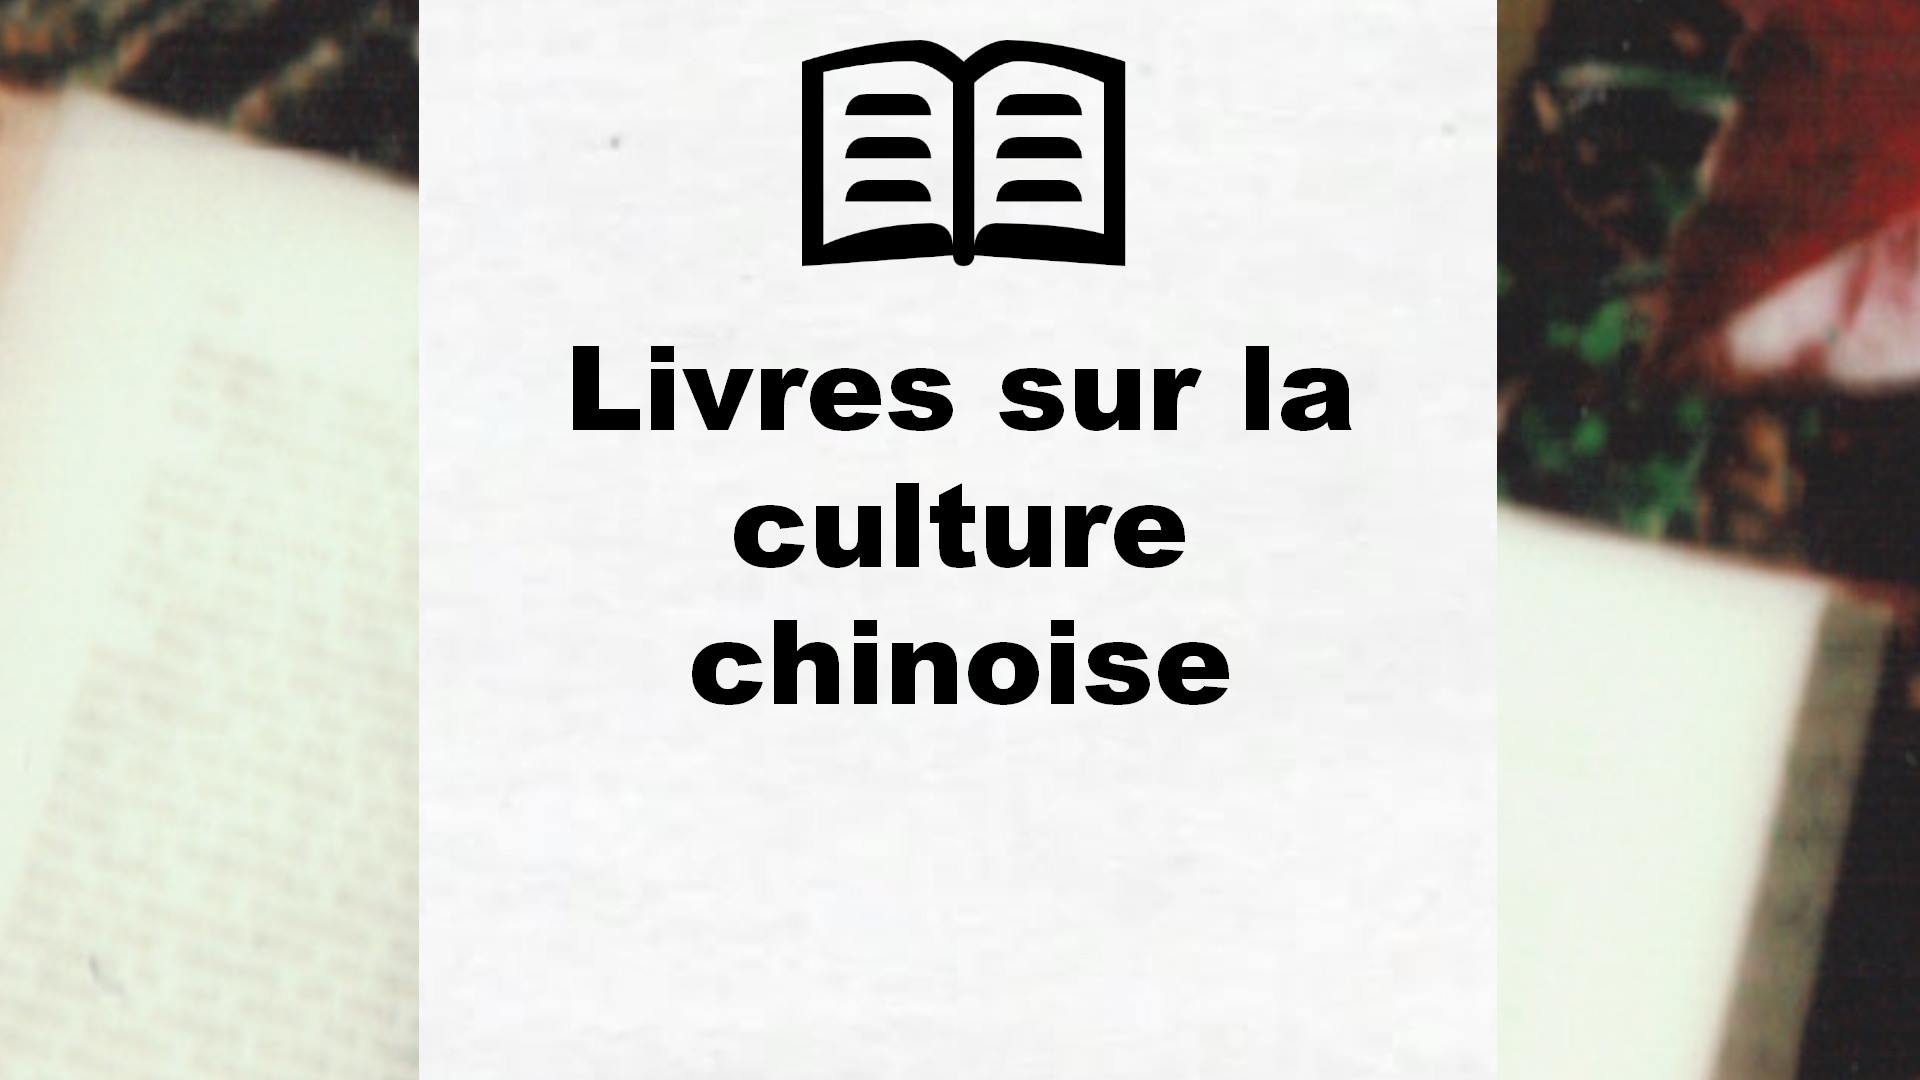 Livres sur la culture chinoise